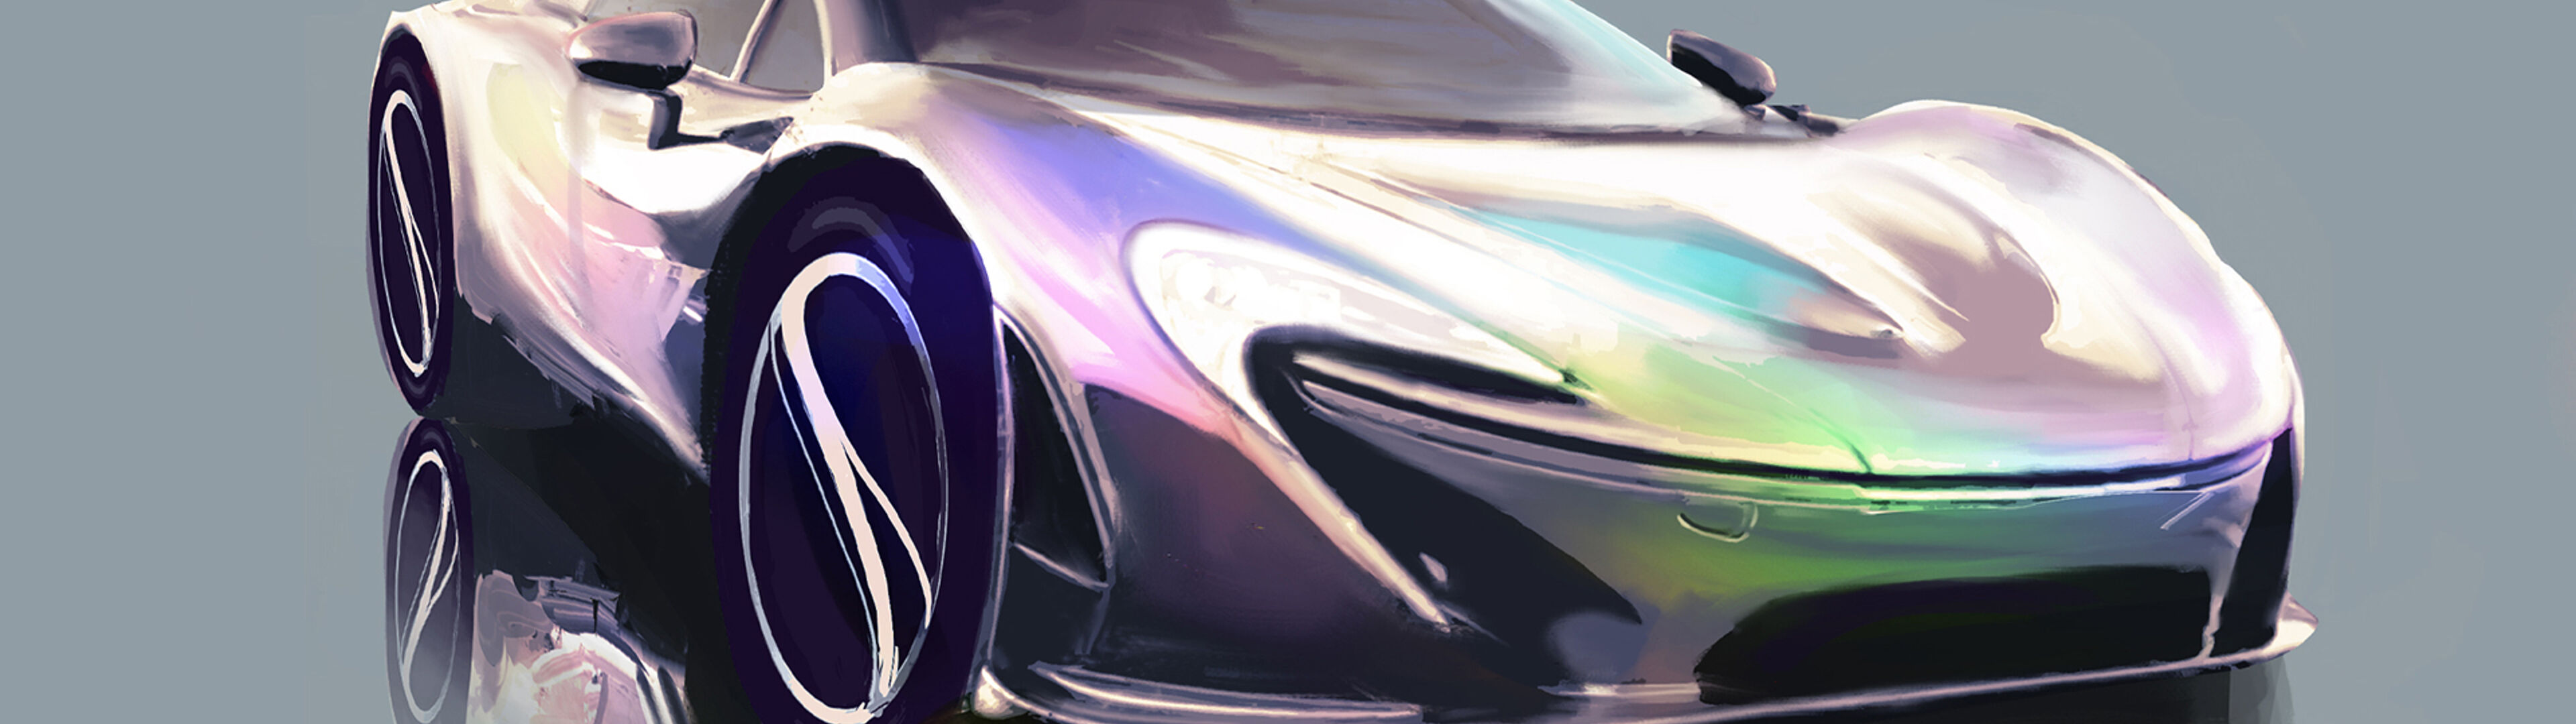 Una ilustración digital de un automóvil deportivo de alto rendimiento con un acabado holográfico y un diseño aerodinámico.